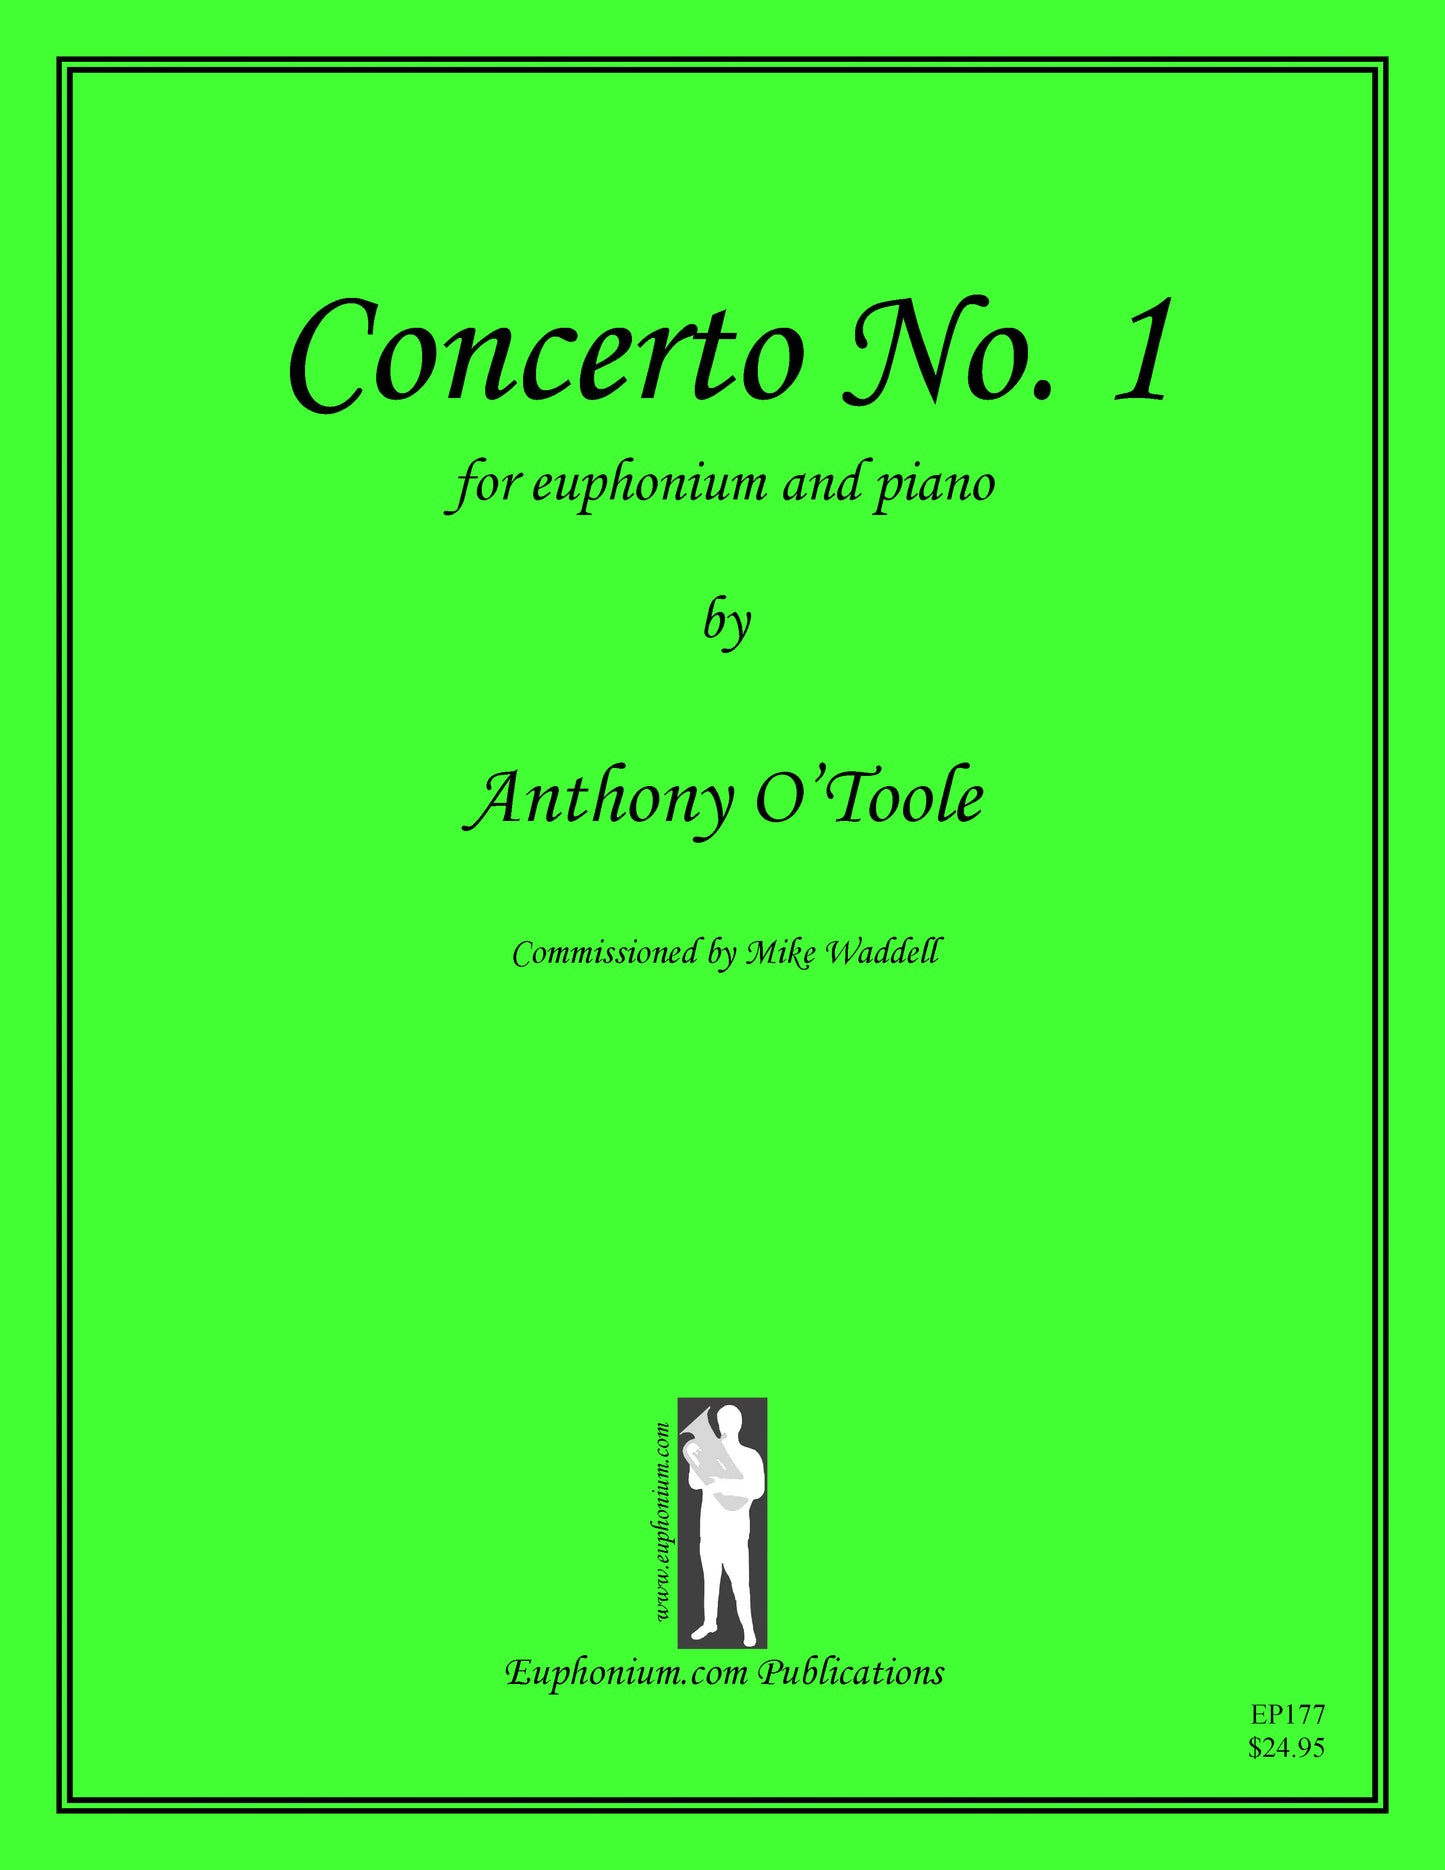 O'Toole, Anthony - Euphonium Concerto No. 1